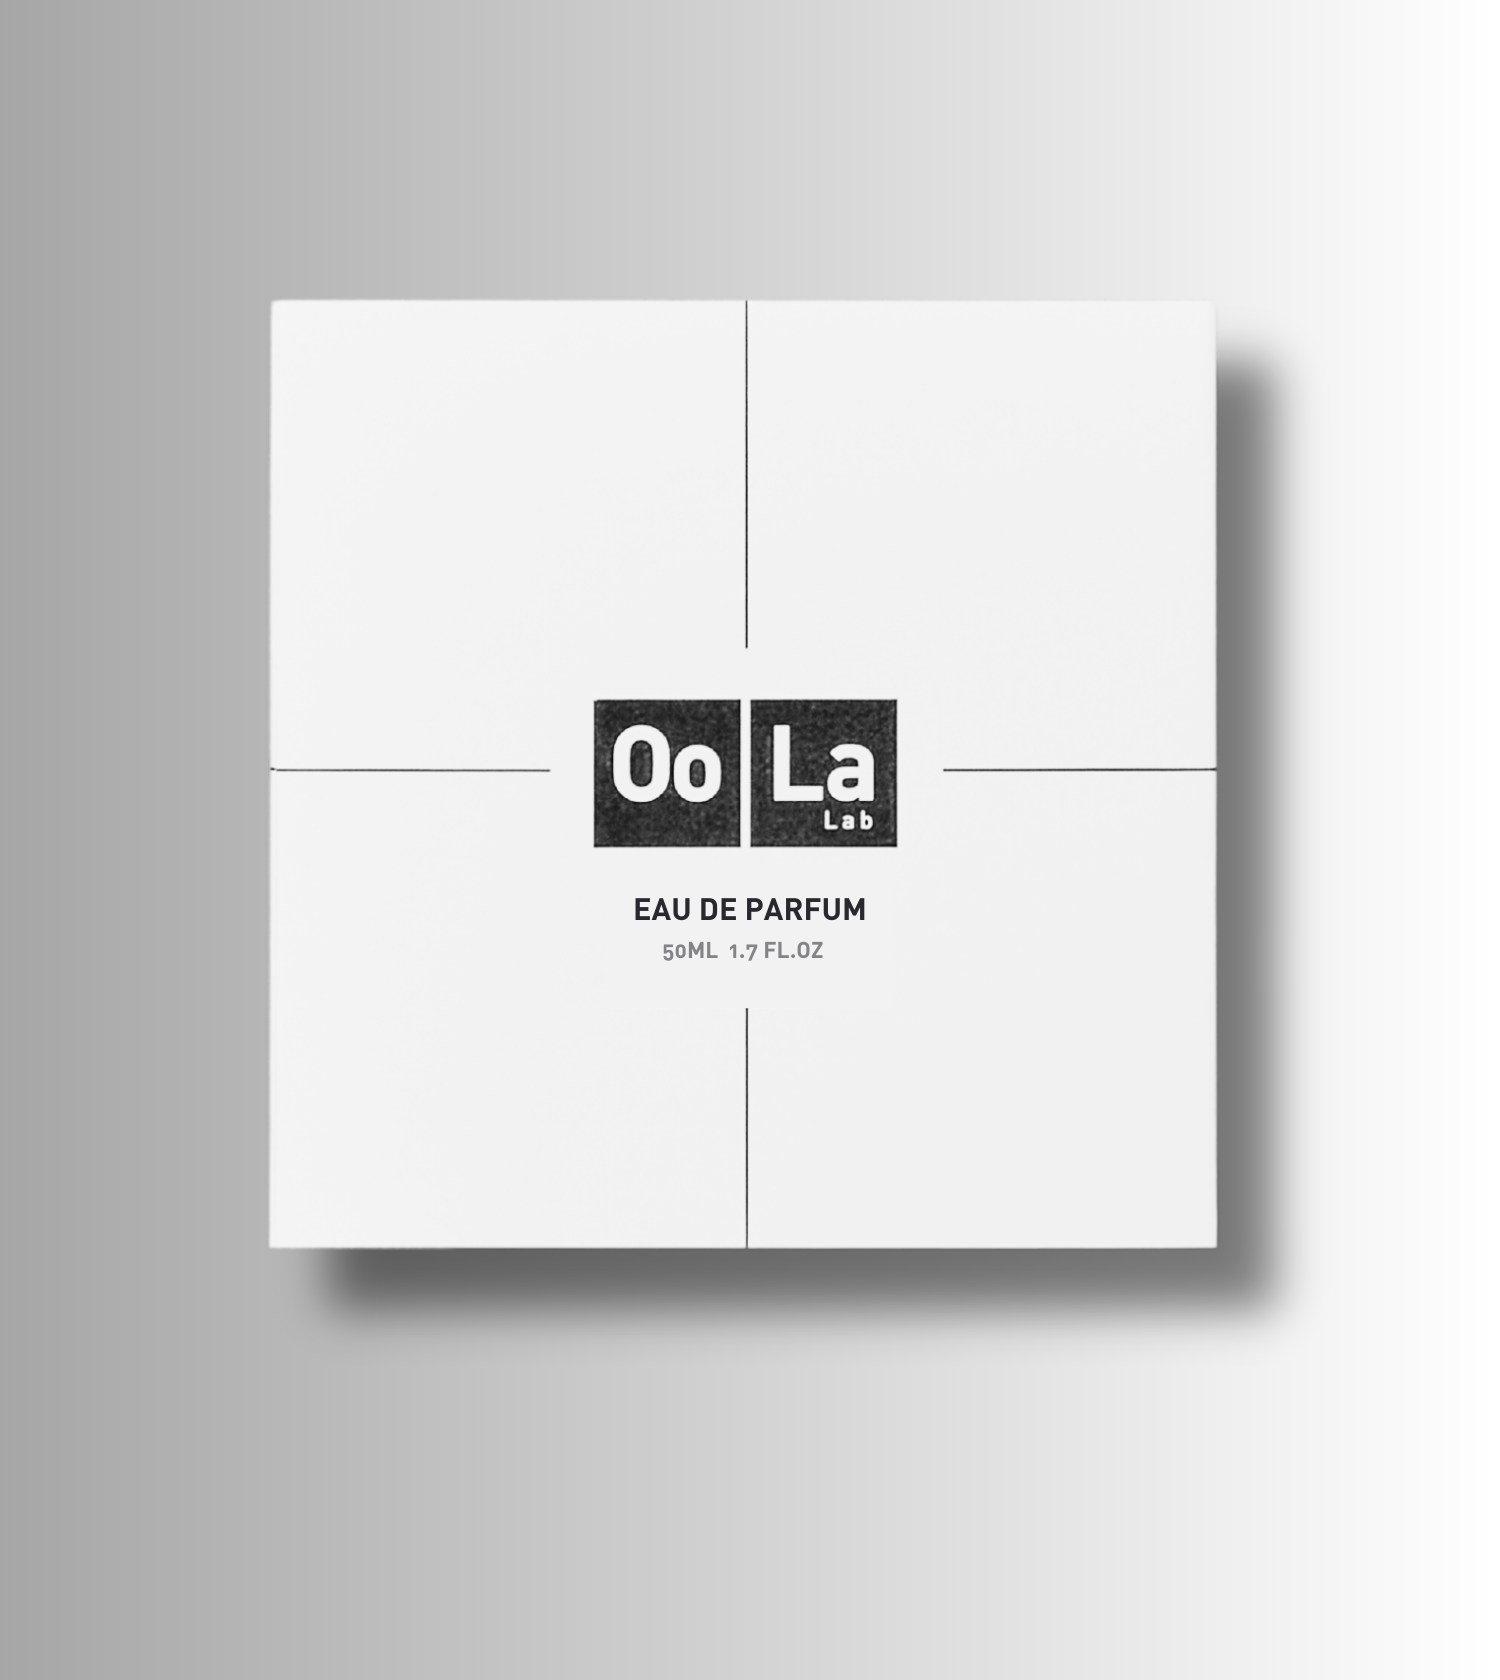 OoLa-Lab-eau-de-parfum-box_2b4aaae9-25f9-49f5-9876-042d3c201d47.png